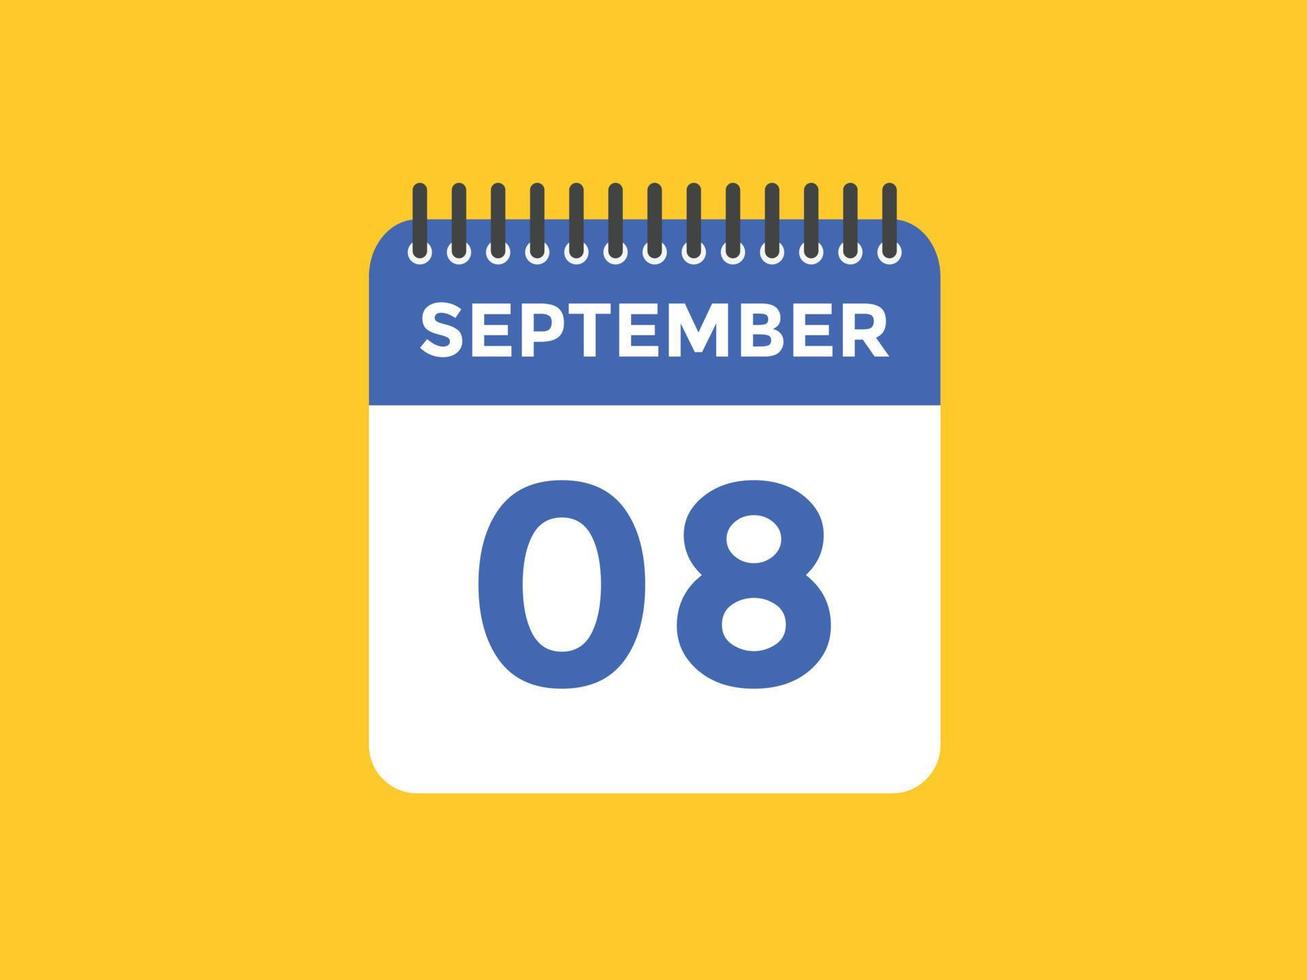 rappel du calendrier du 8 septembre. Modèle d'icône de calendrier quotidien du 8 septembre. modèle de conception d'icône calendrier 8 septembre. illustration vectorielle vecteur